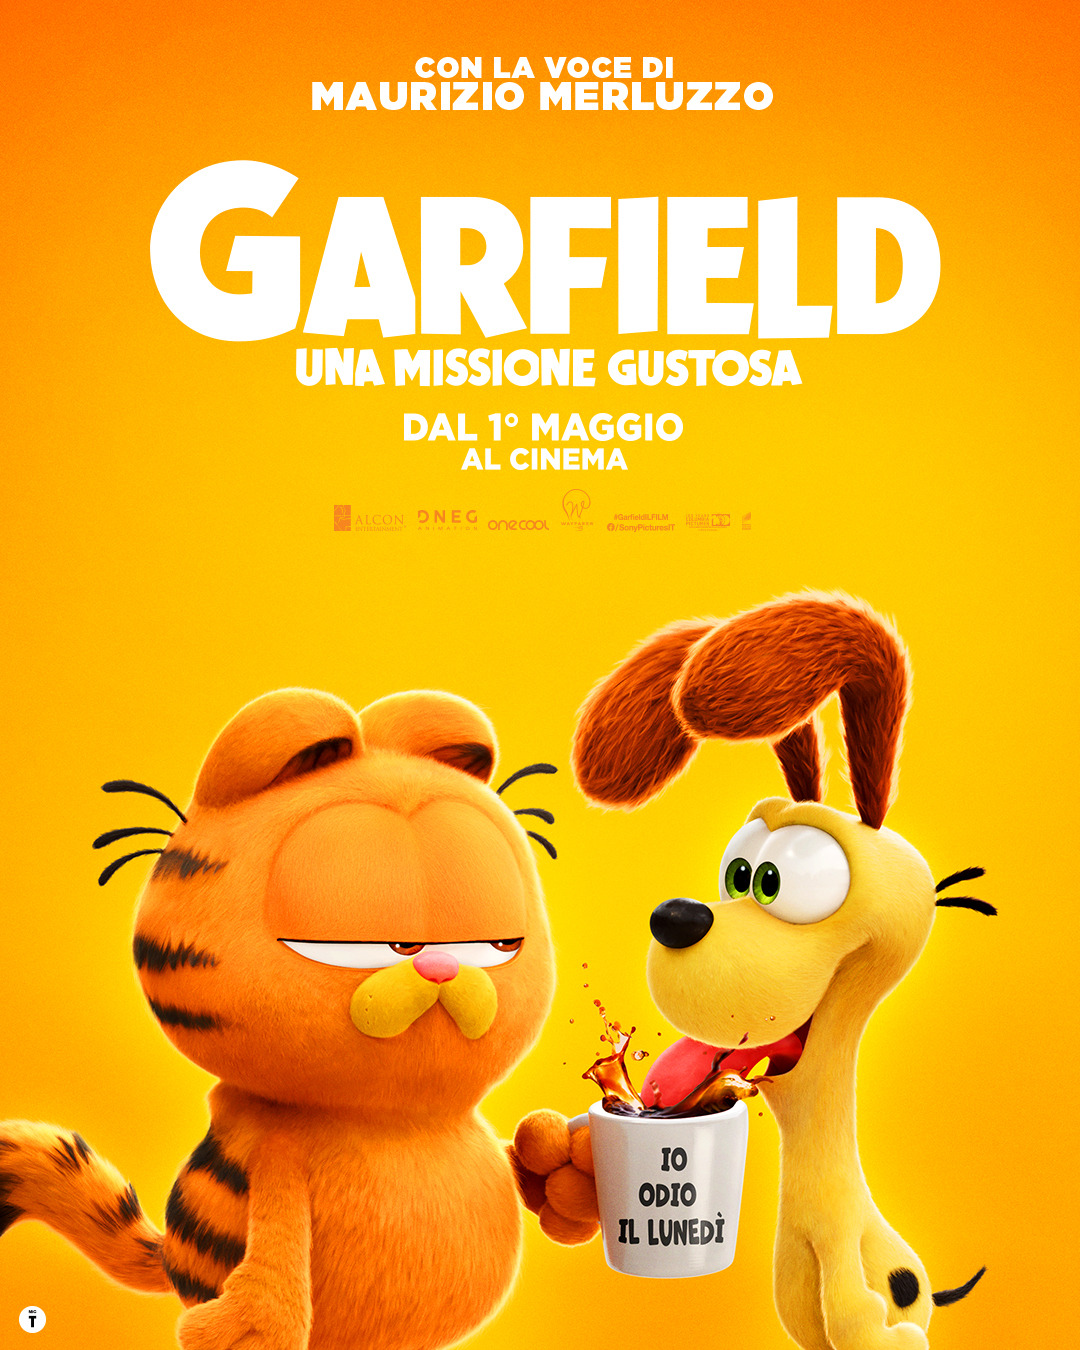 Garfield: una missione gustosa, nuovo trailer e poster per il film nelle sale dal 1 maggio al cinema